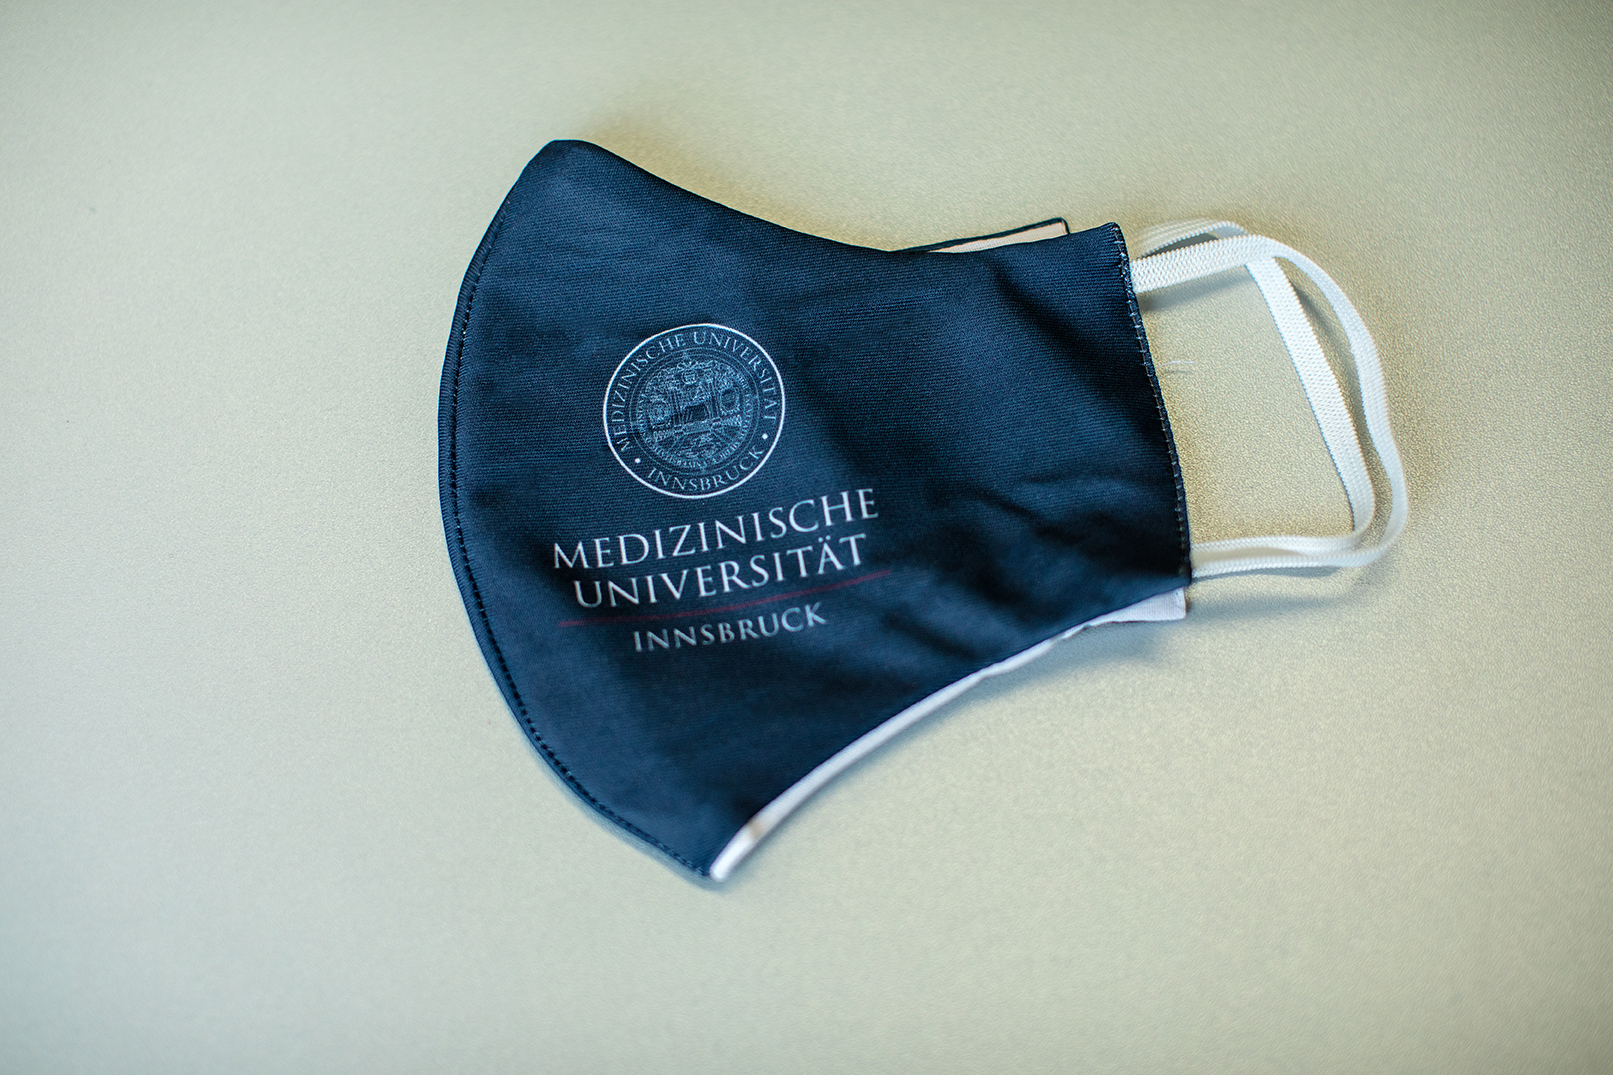 Mund-Nasen-Schutz mit Logo der Medizinischen Universität Innsbruck Farbe navy